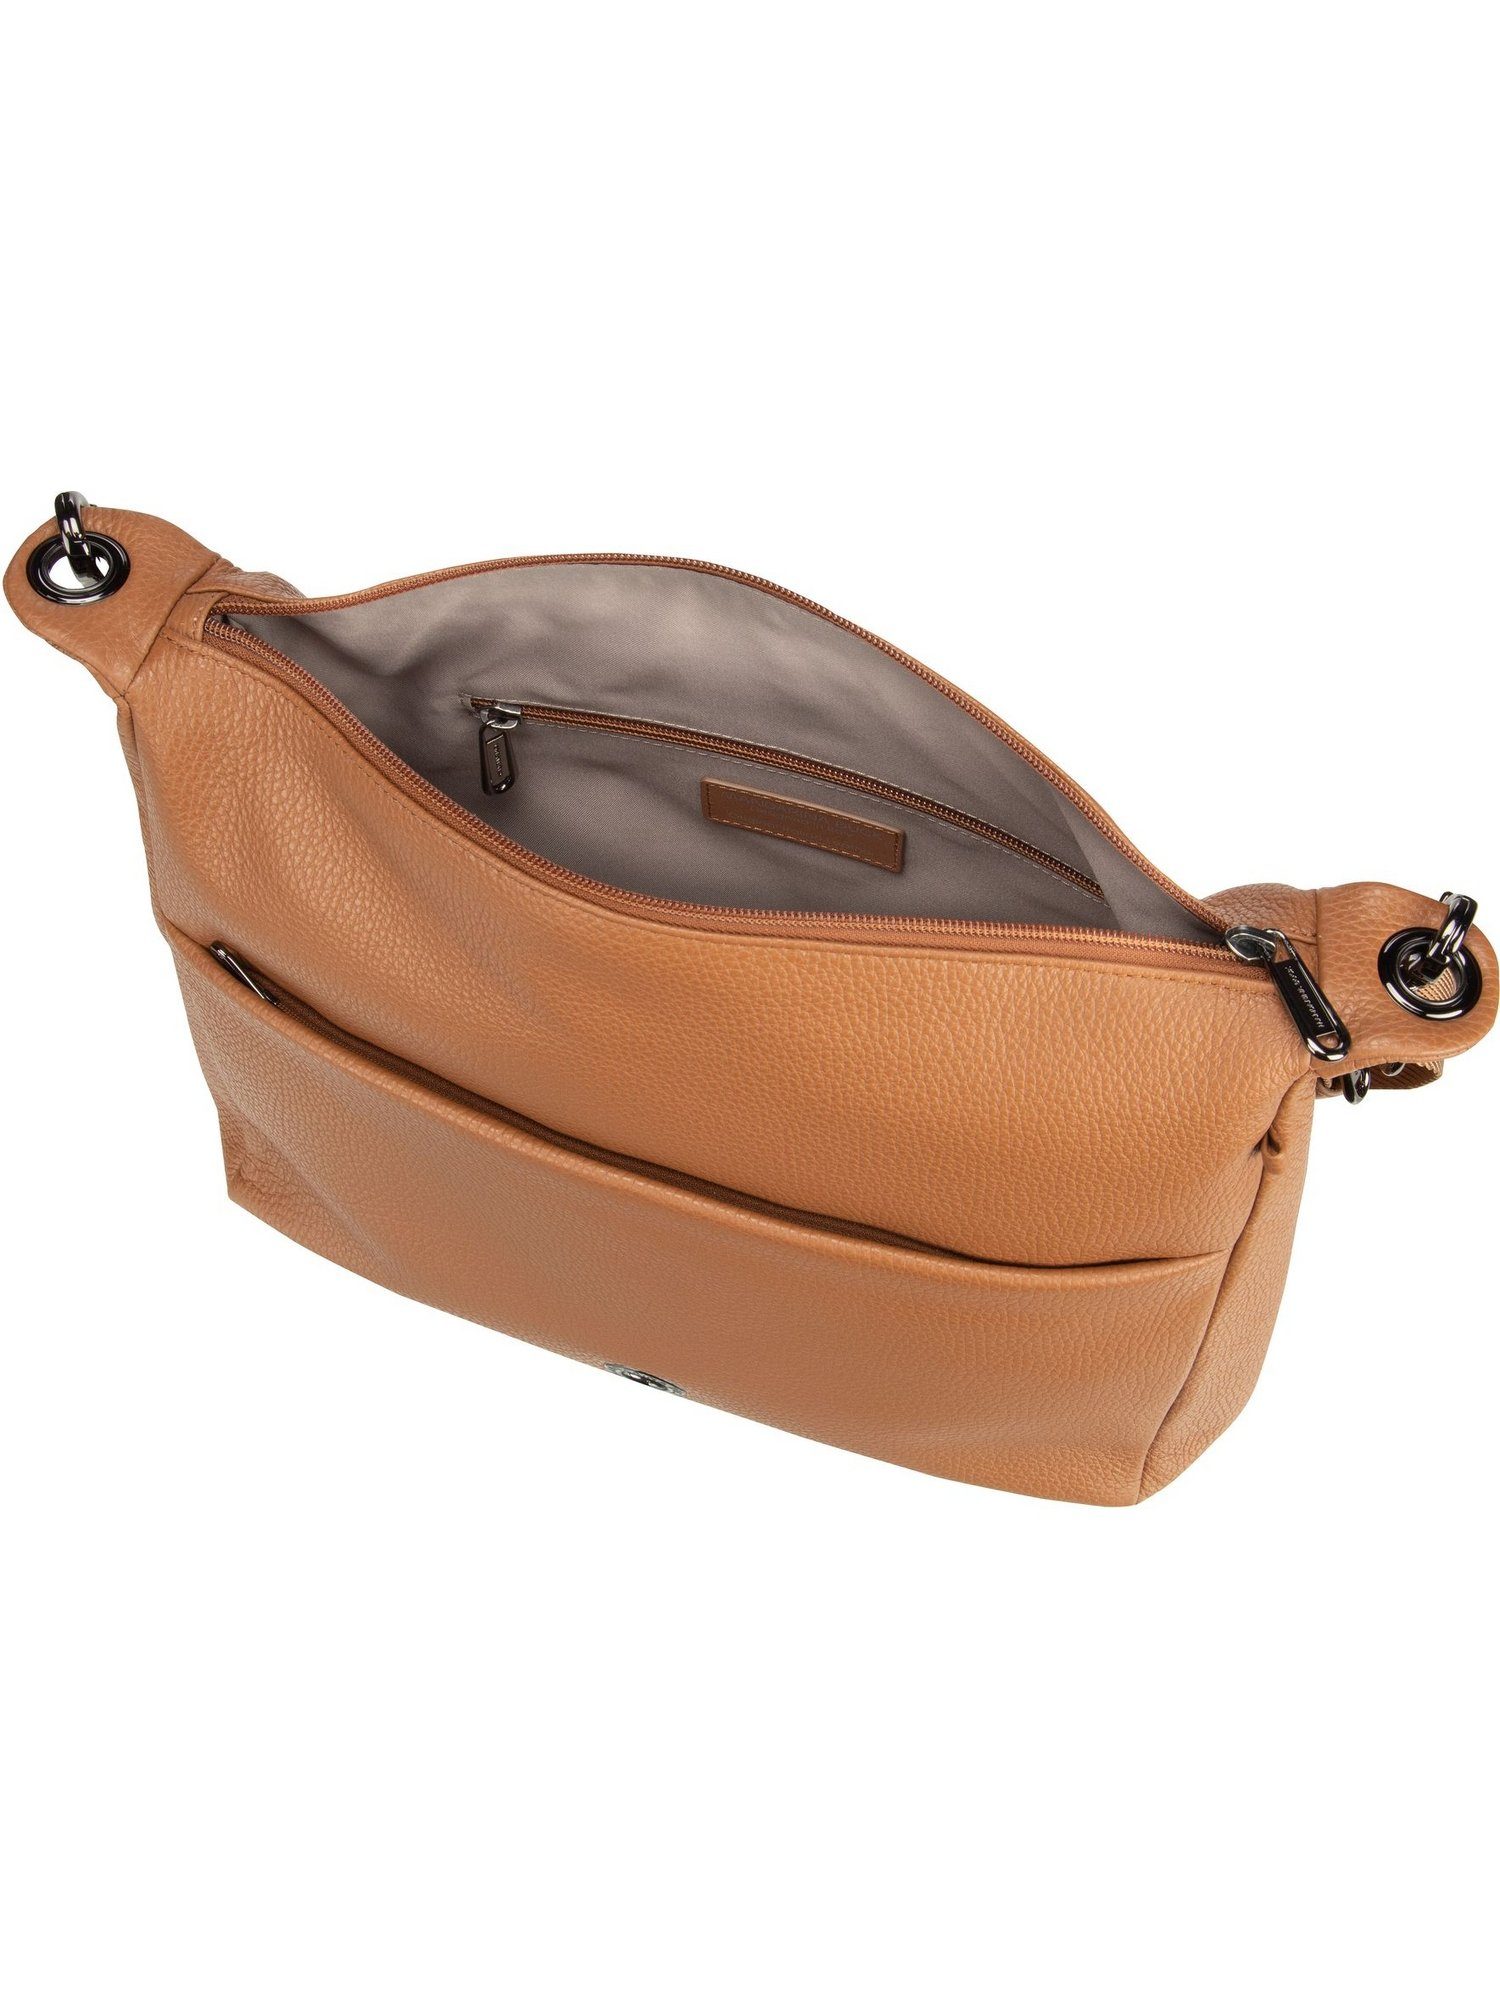 Mandarina Tan Bag FZT49, Mellow Leather Indian Duck Umhängetasche Shoulder Beuteltasche